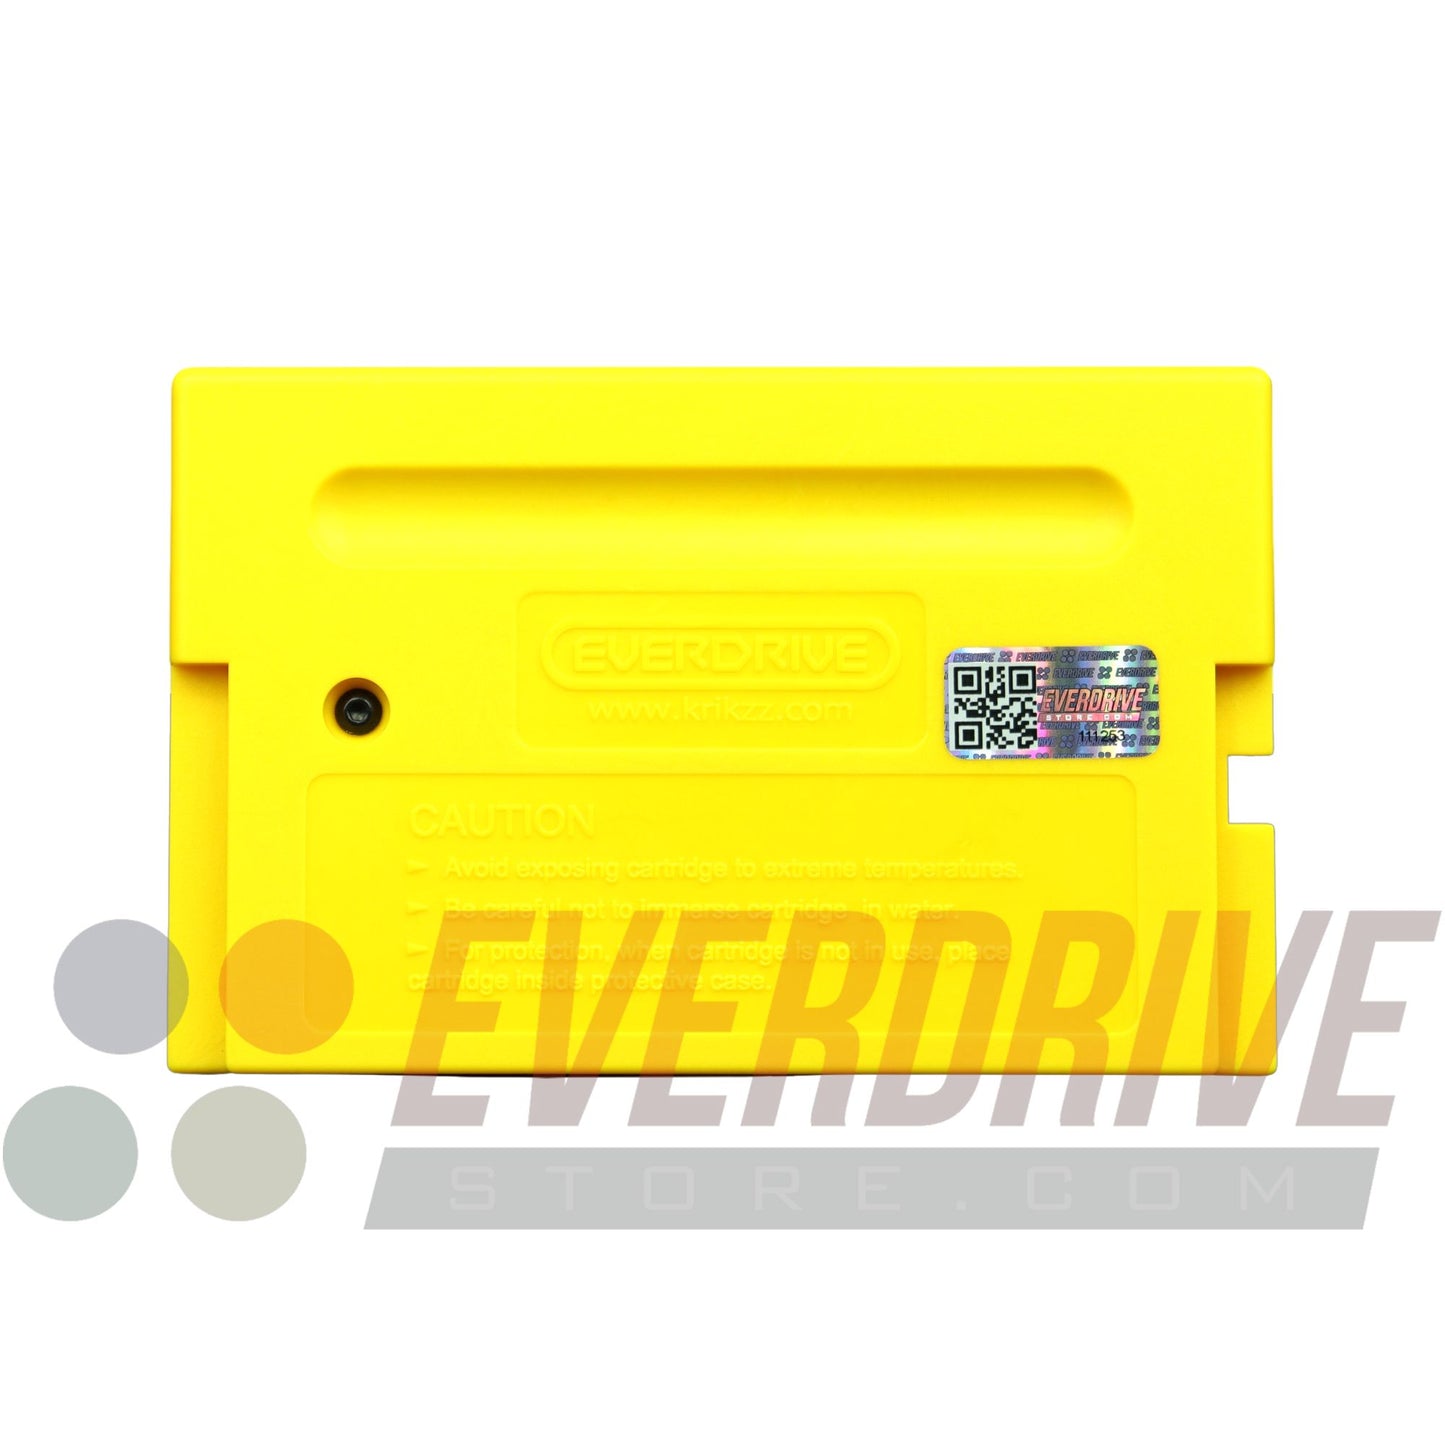 Mega Everdrive X5 - Yellow